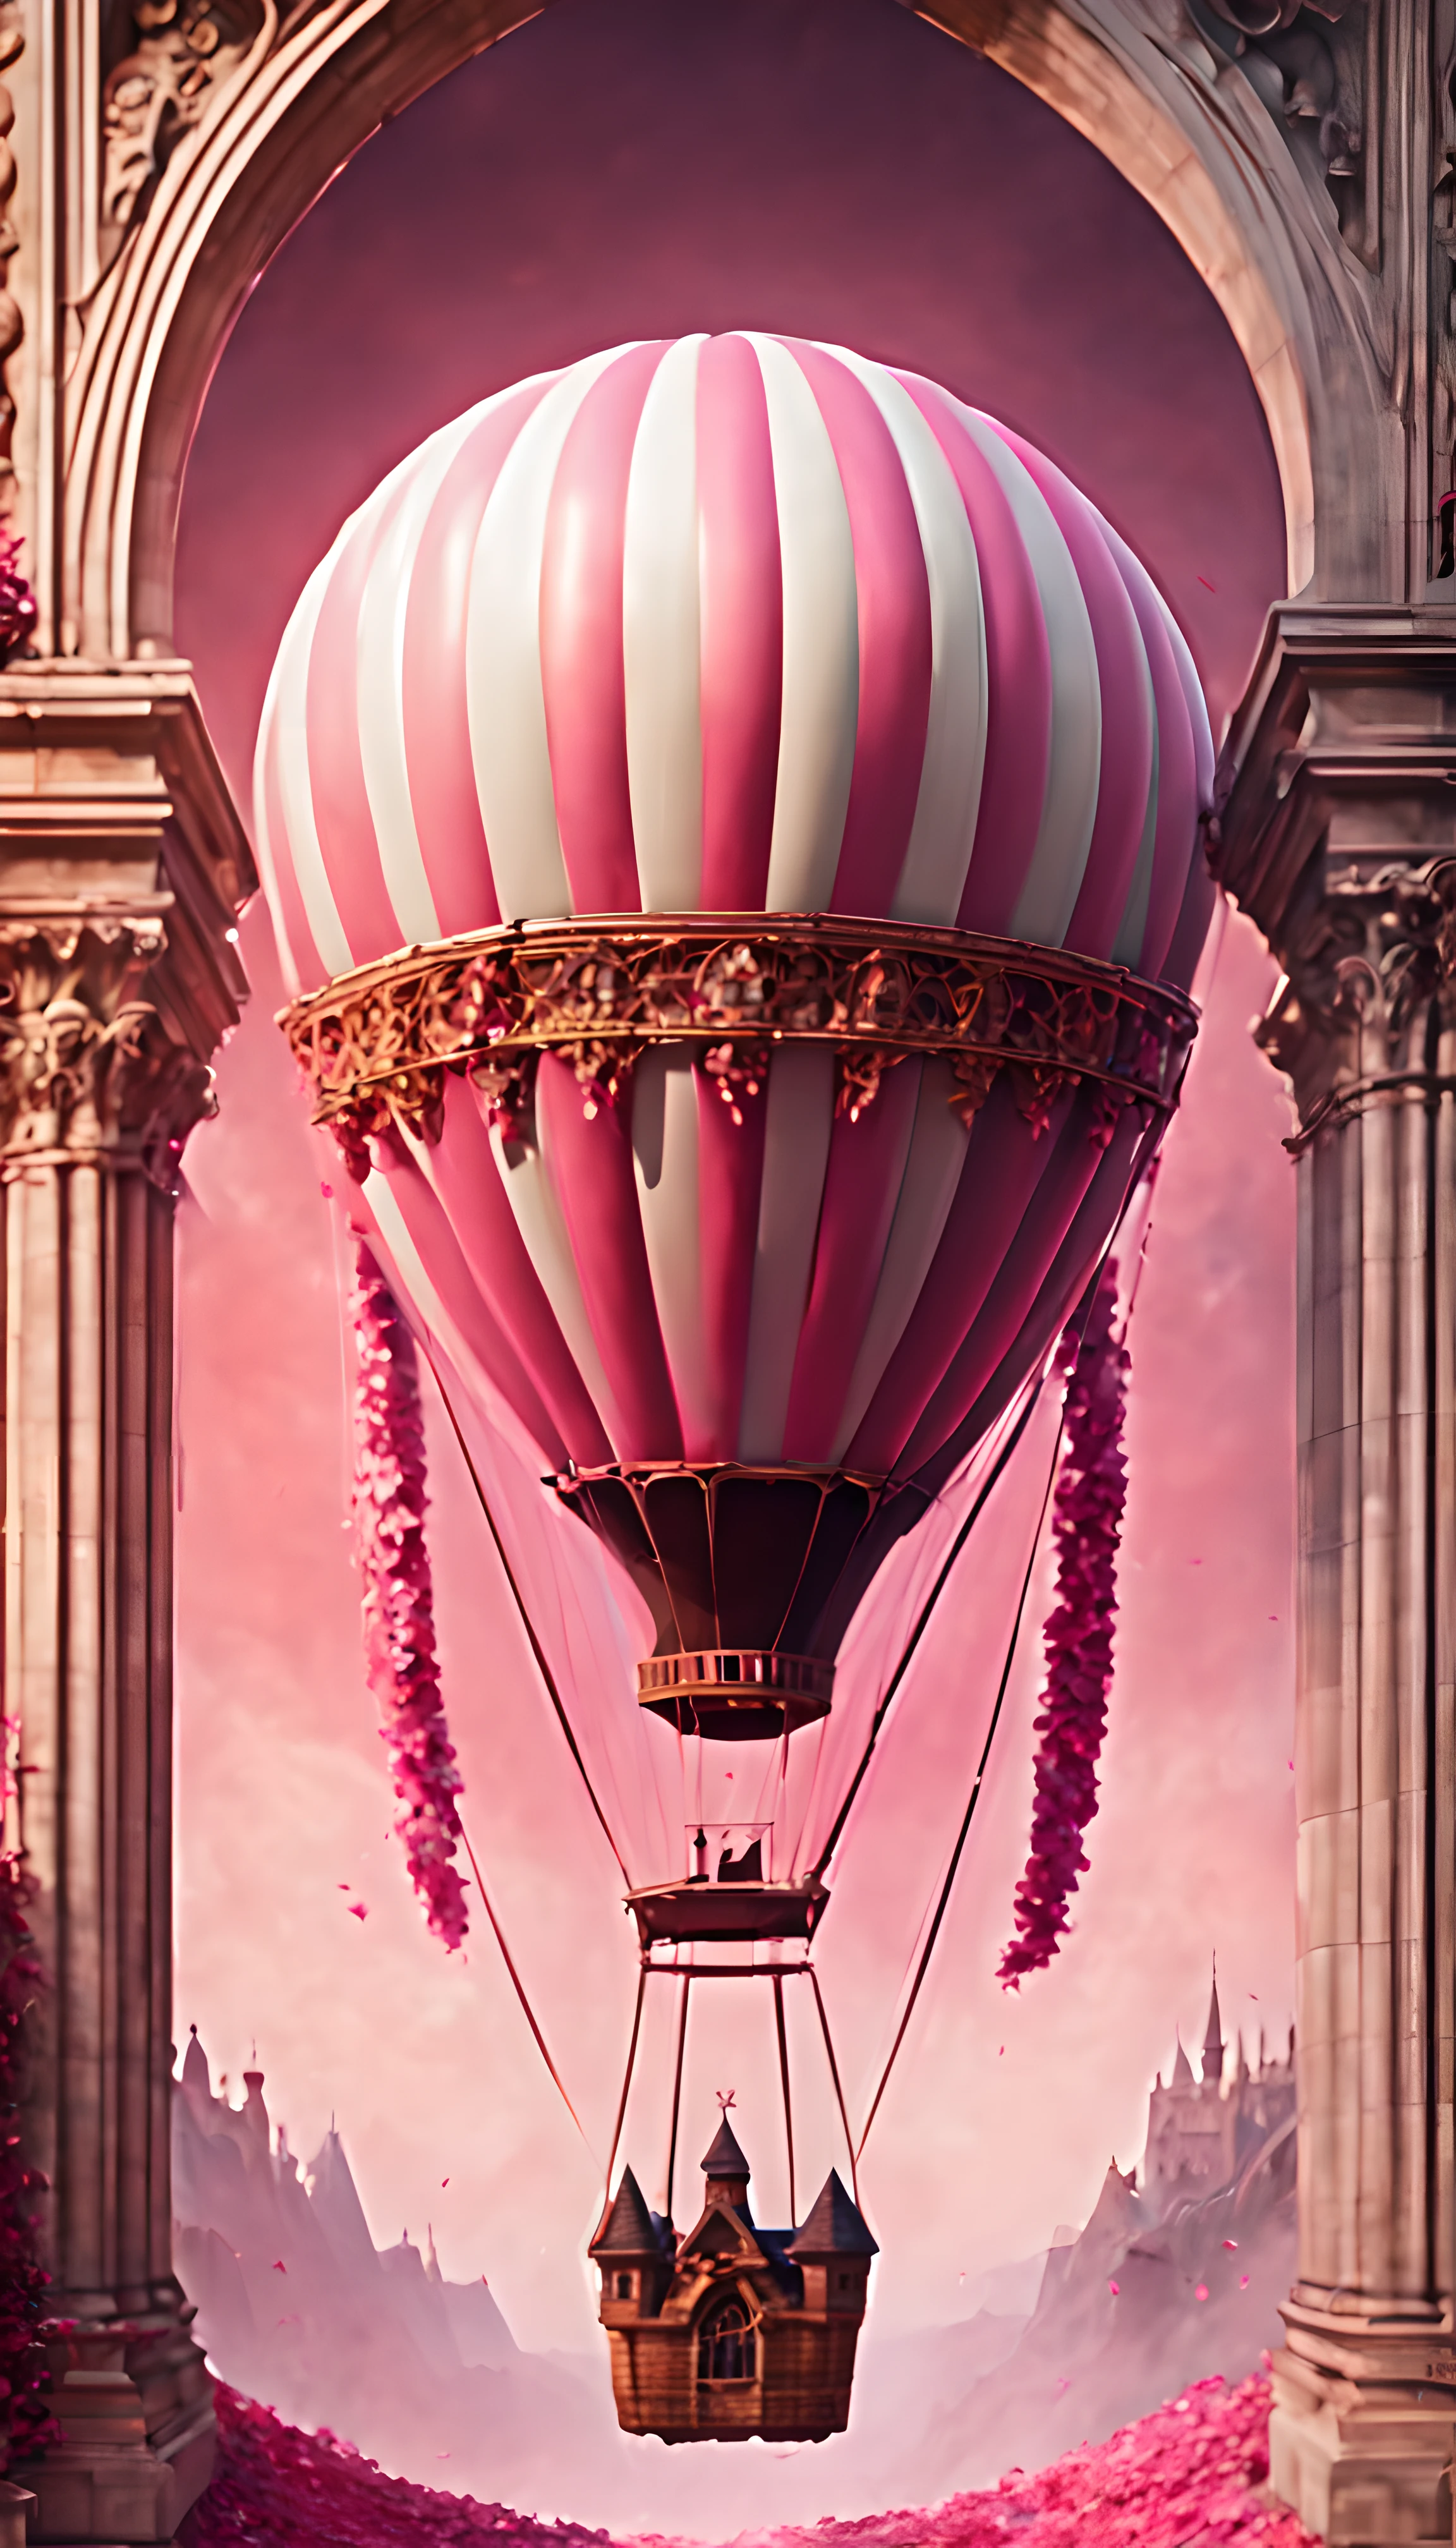 chef-d&#39;œuvre, meilleure qualité, (épique, Absurde, élégant) (big hot air balloon inside an élégant gothic arc:1.3), (chute de flux romantiques de pétales roses), été, éclairage volumétrique